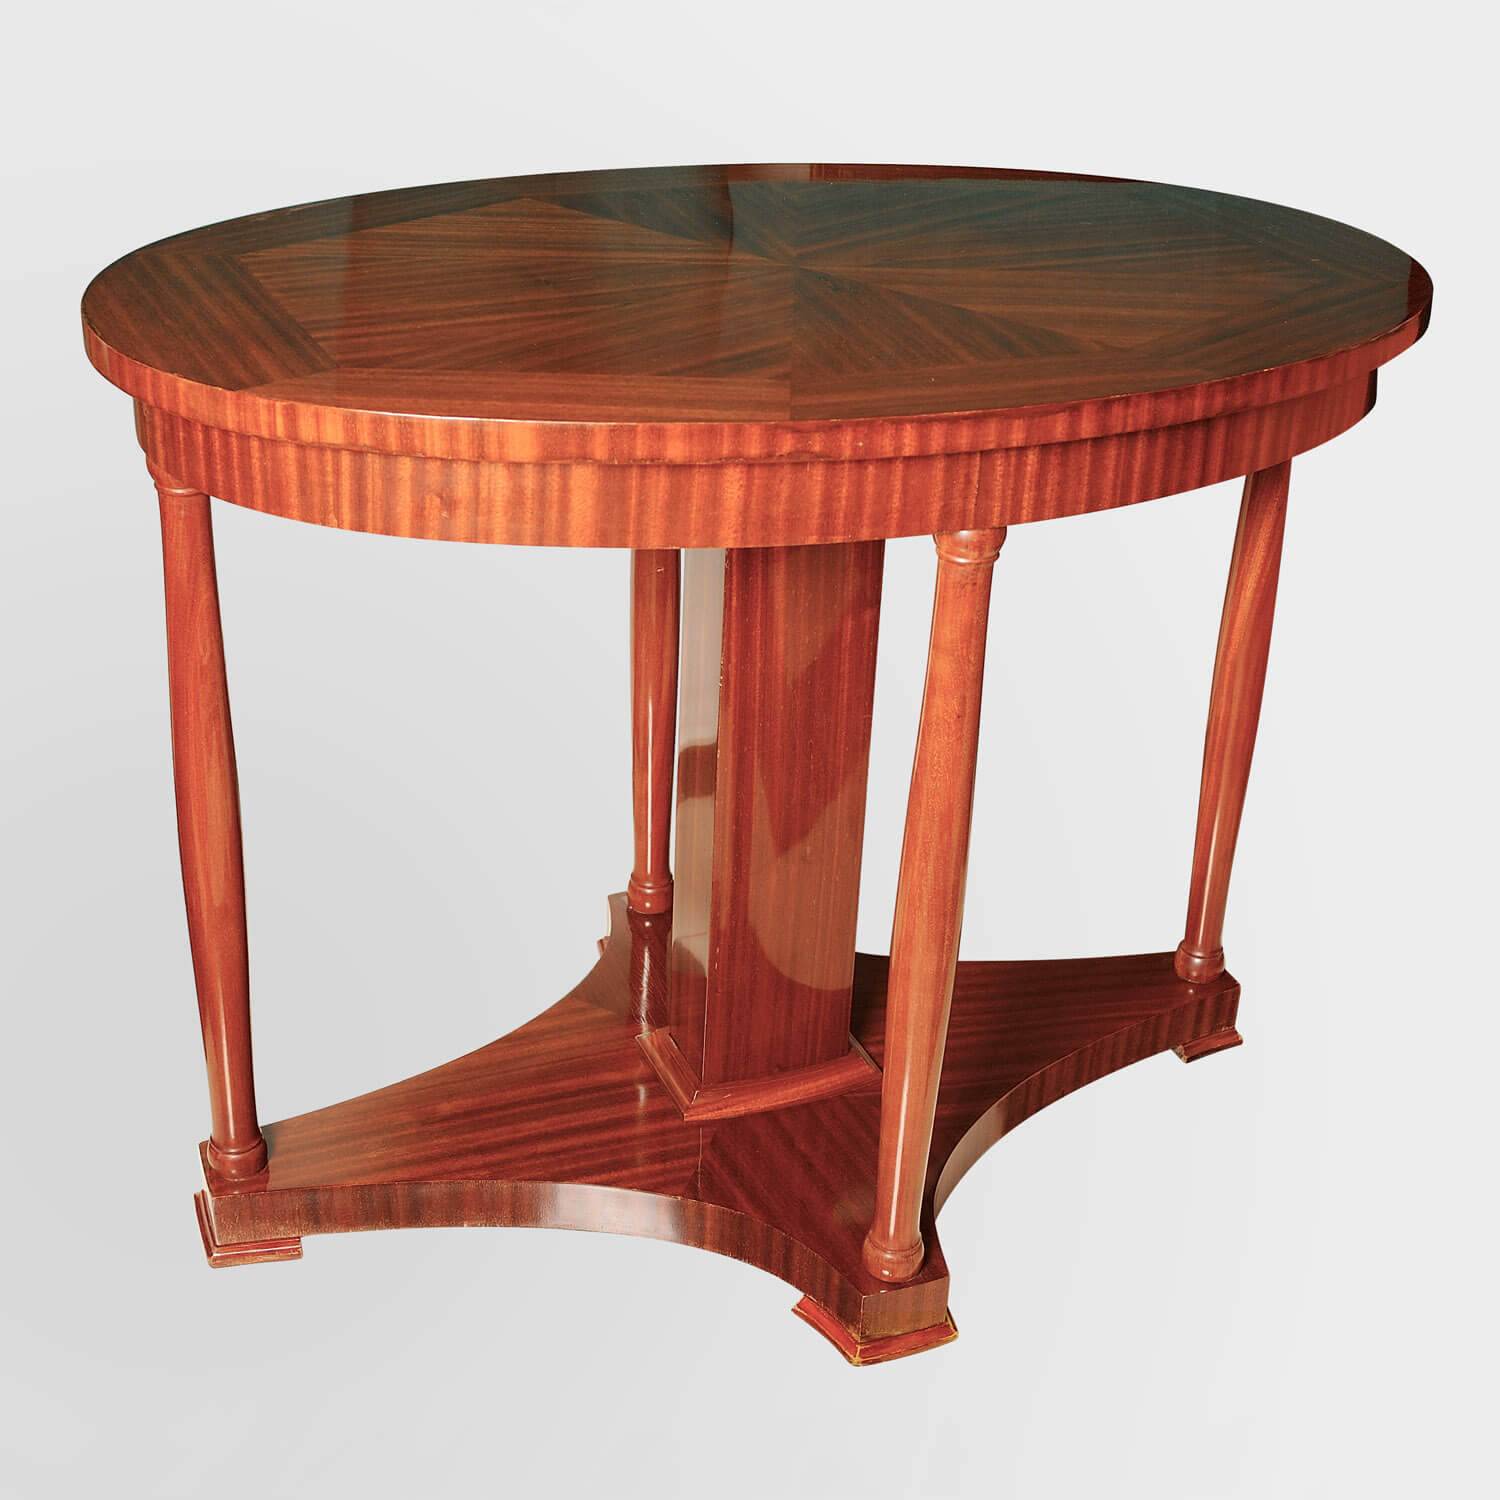 Овальный гостиный стол из красного дерева начала 20 века